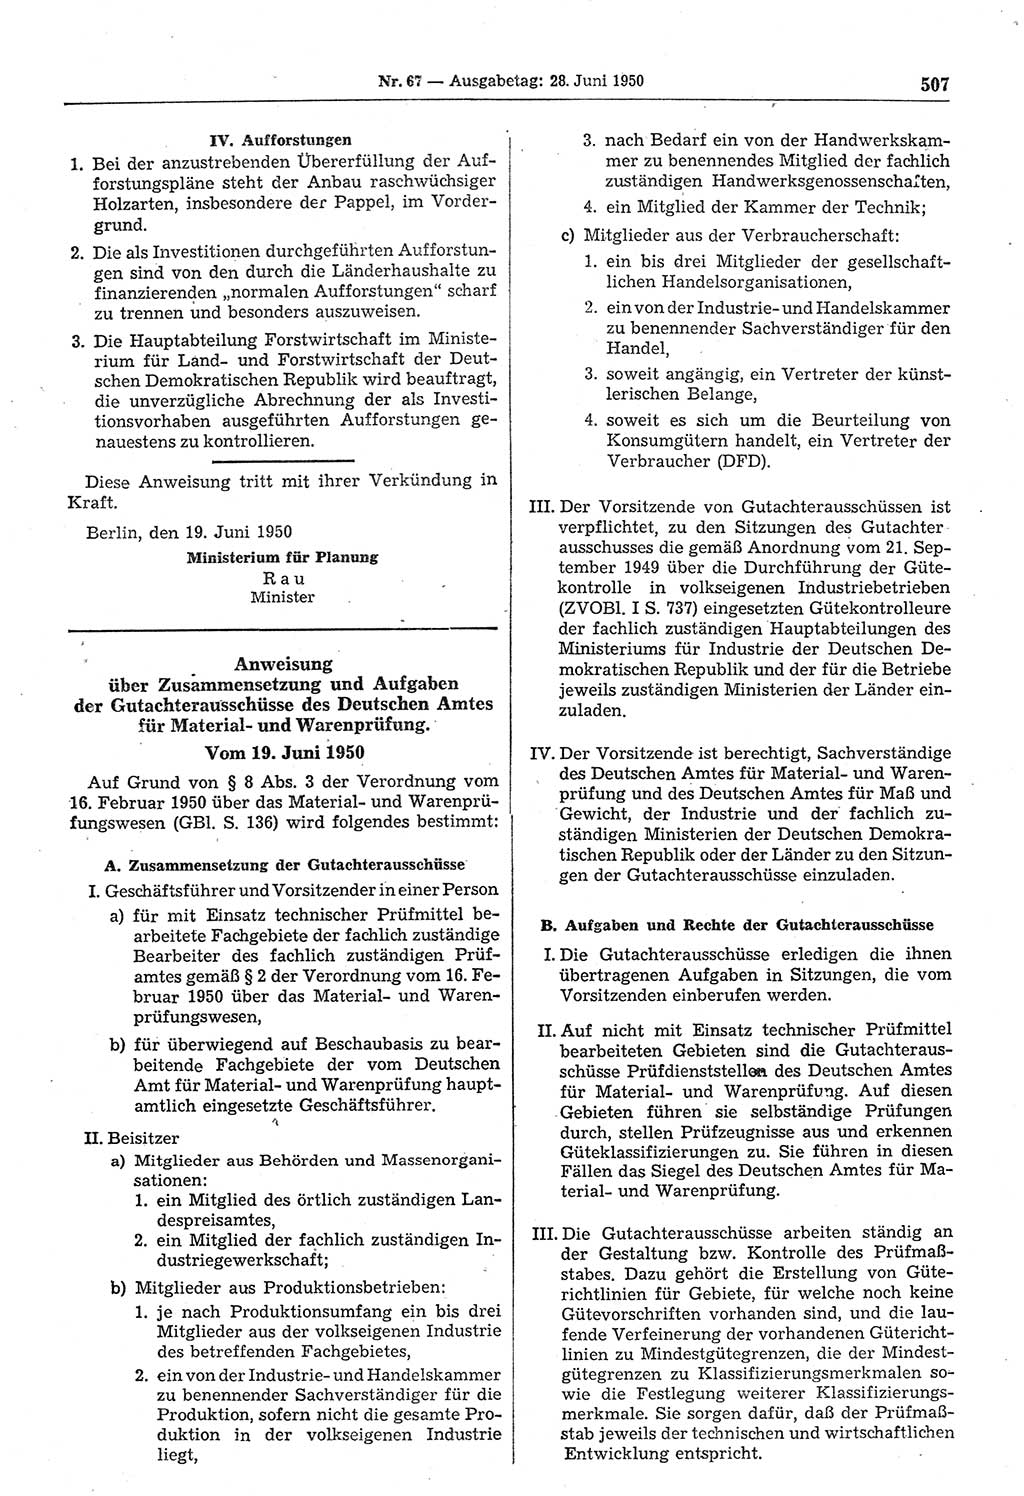 Gesetzblatt (GBl.) der Deutschen Demokratischen Republik (DDR) 1950, Seite 507 (GBl. DDR 1950, S. 507)